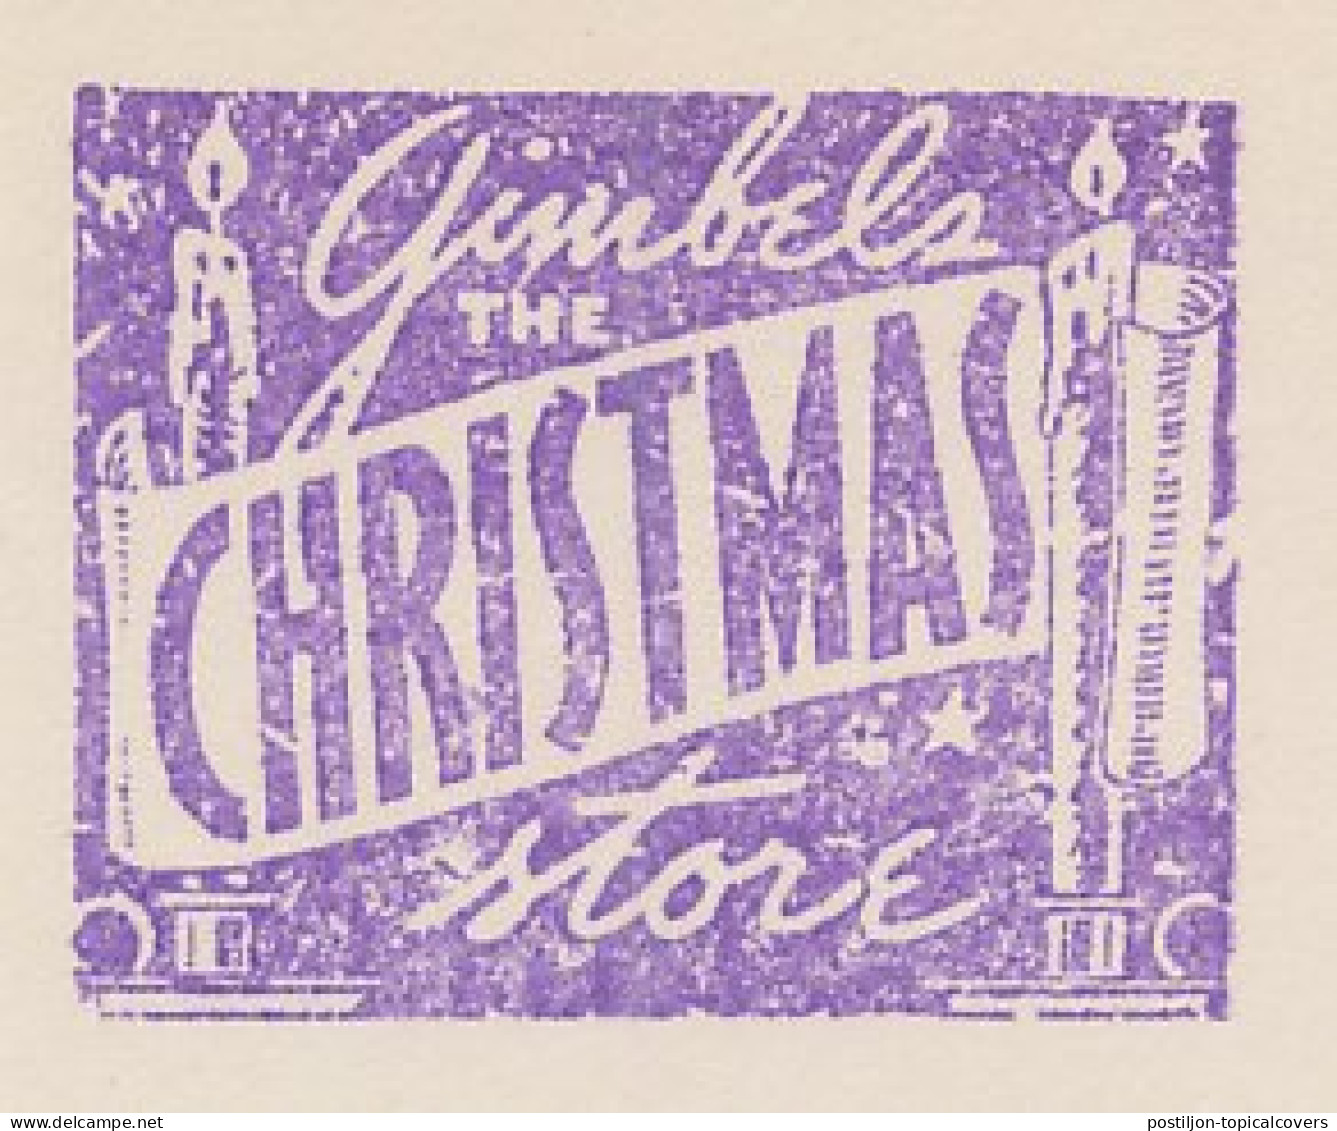 Meter Cut USA 1940 Christmas Store - Gimbel - Christmas